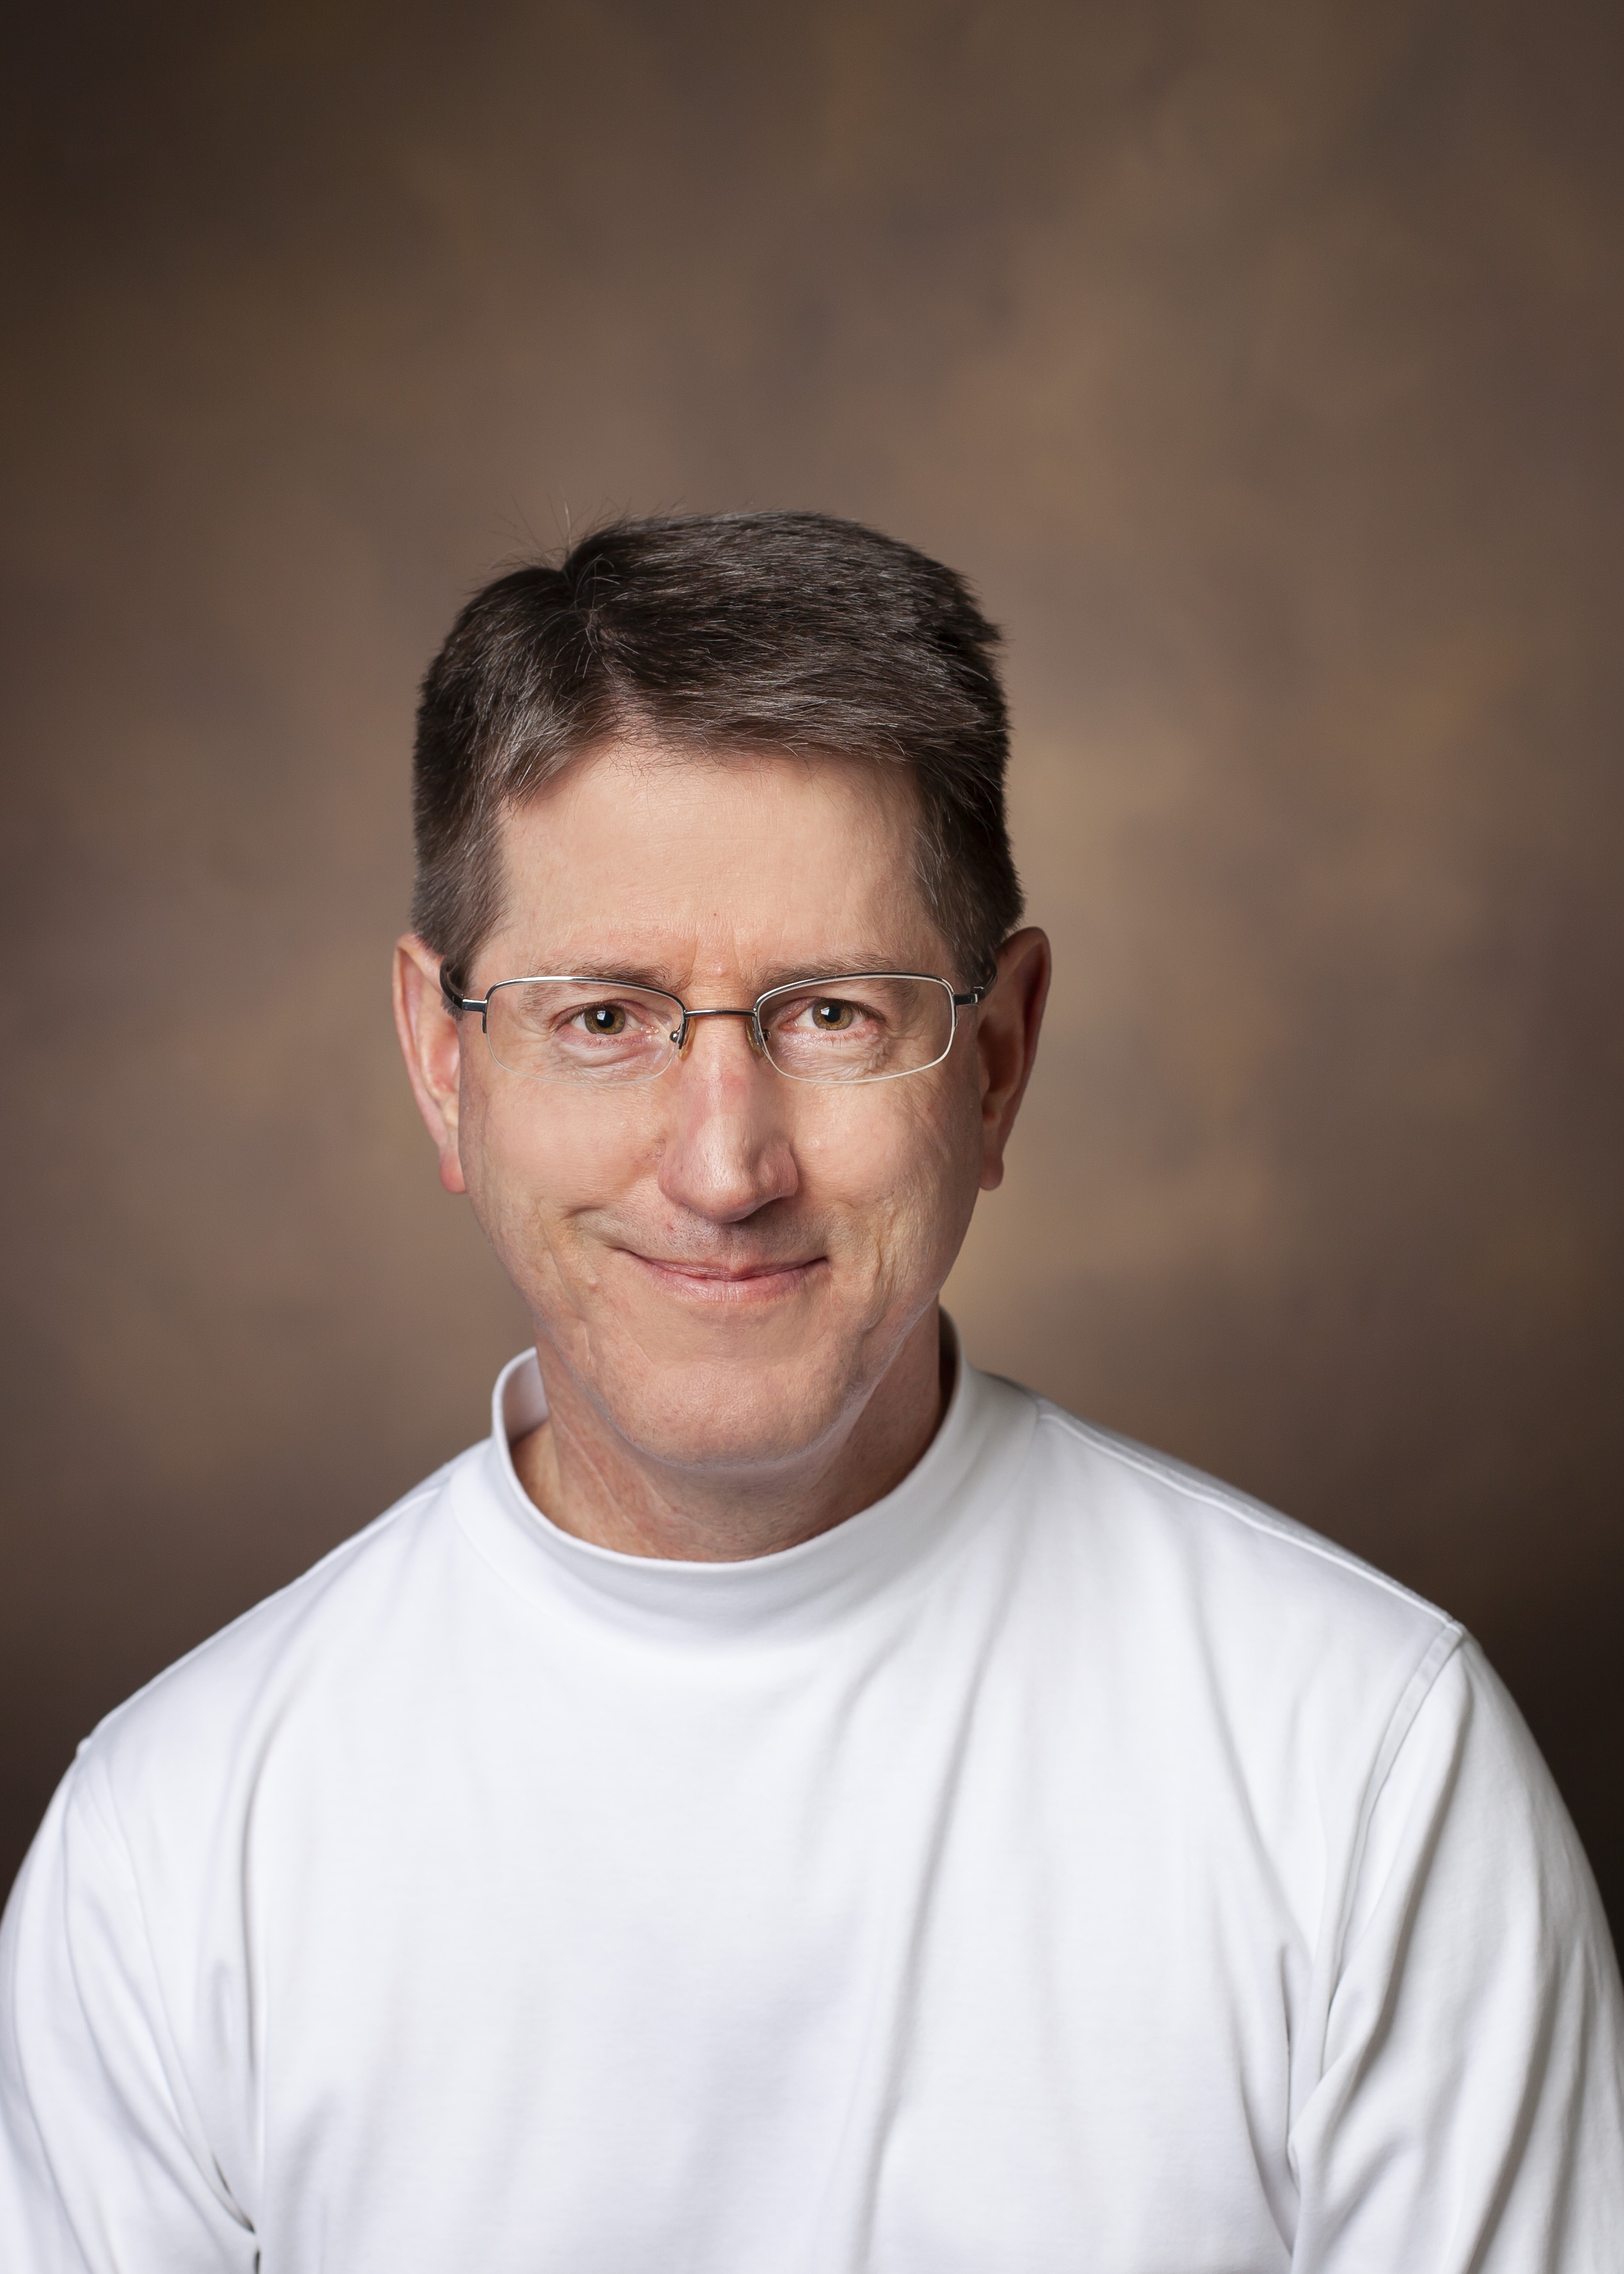 Jeffrey Smith MD, PhD